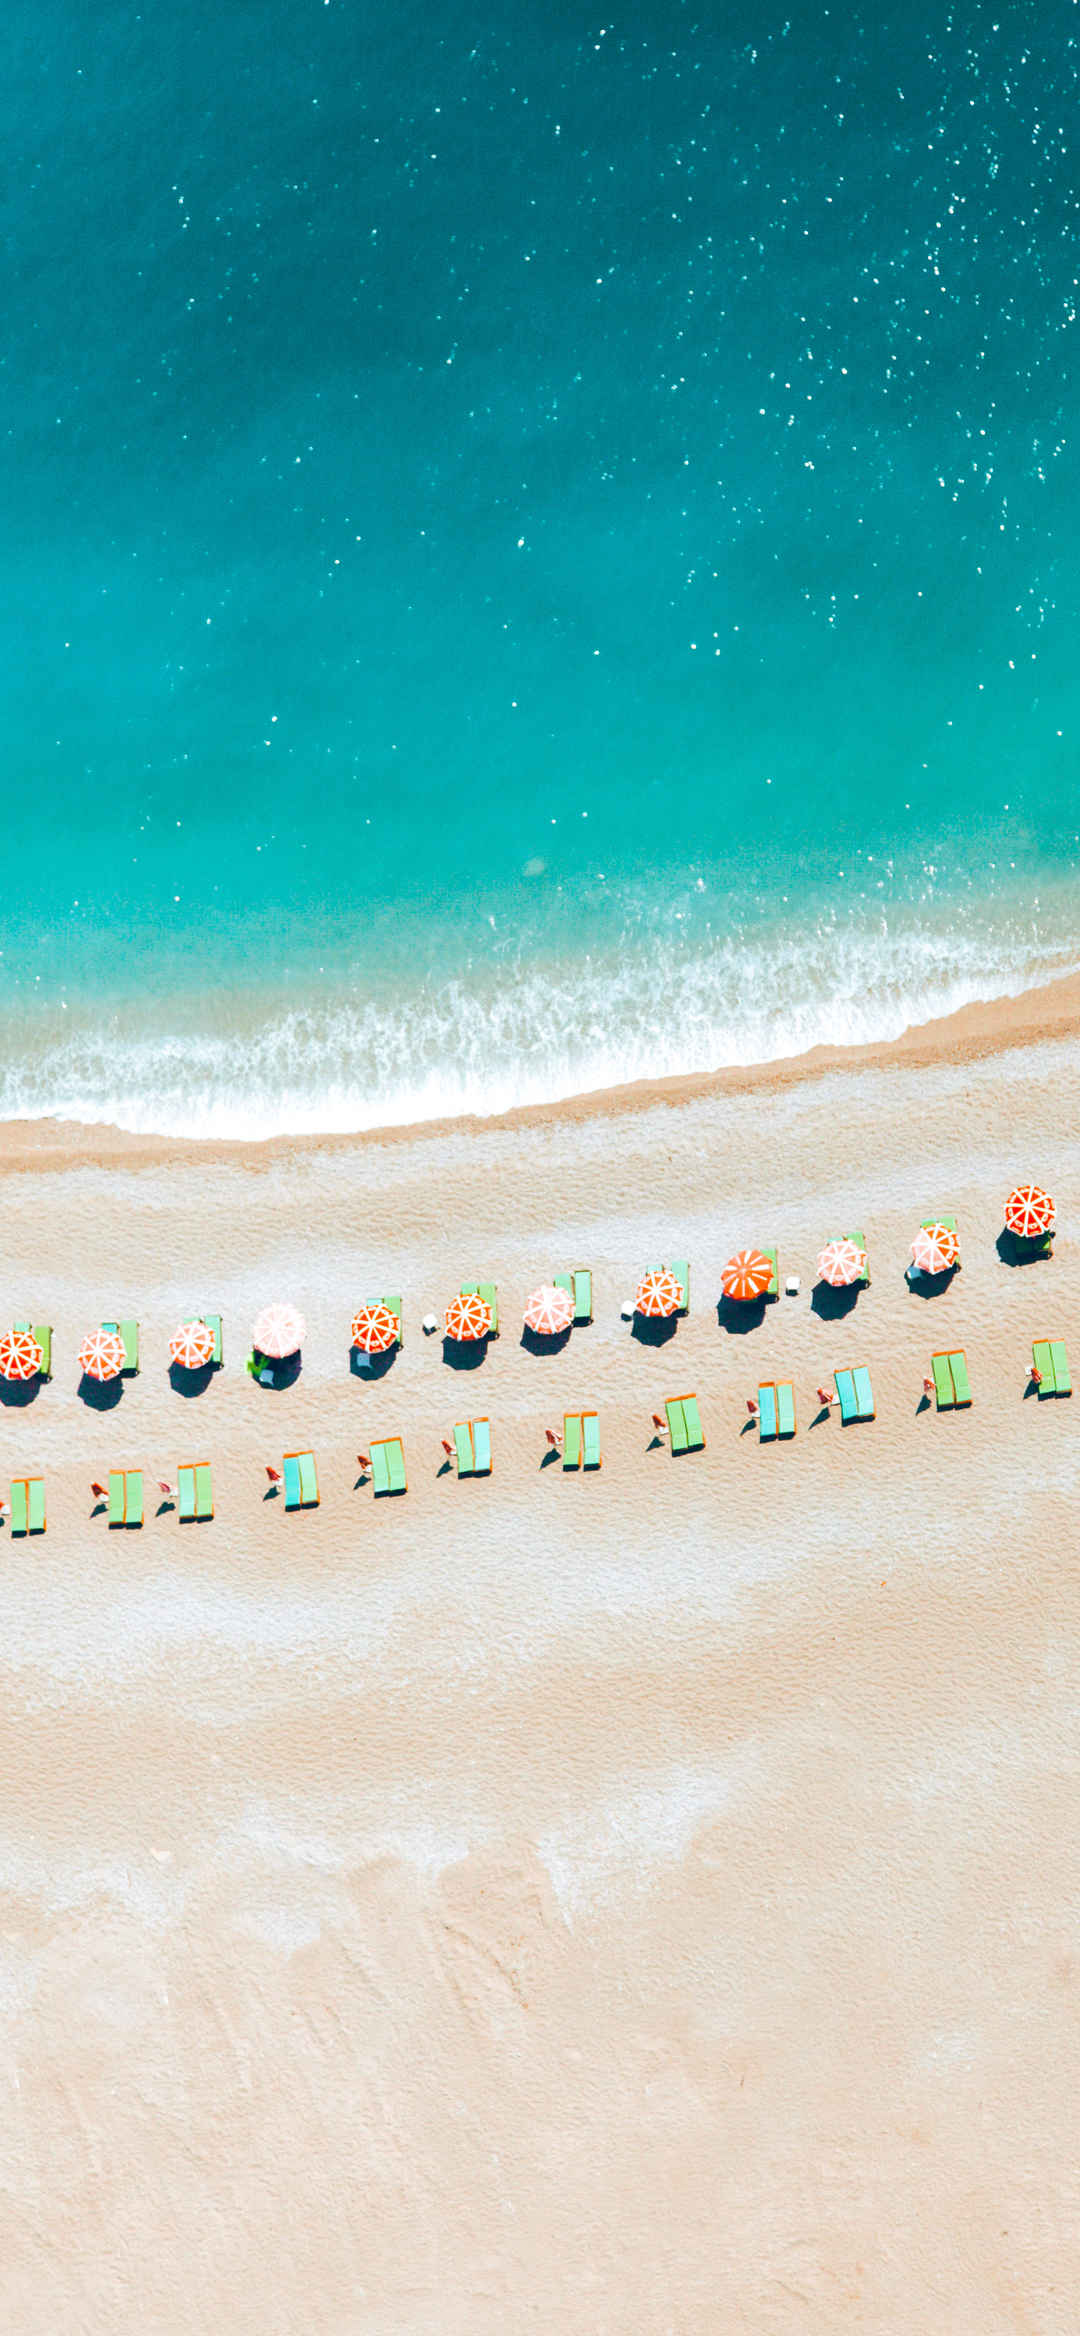 大海沙滩旅游人群竖屏风景壁纸